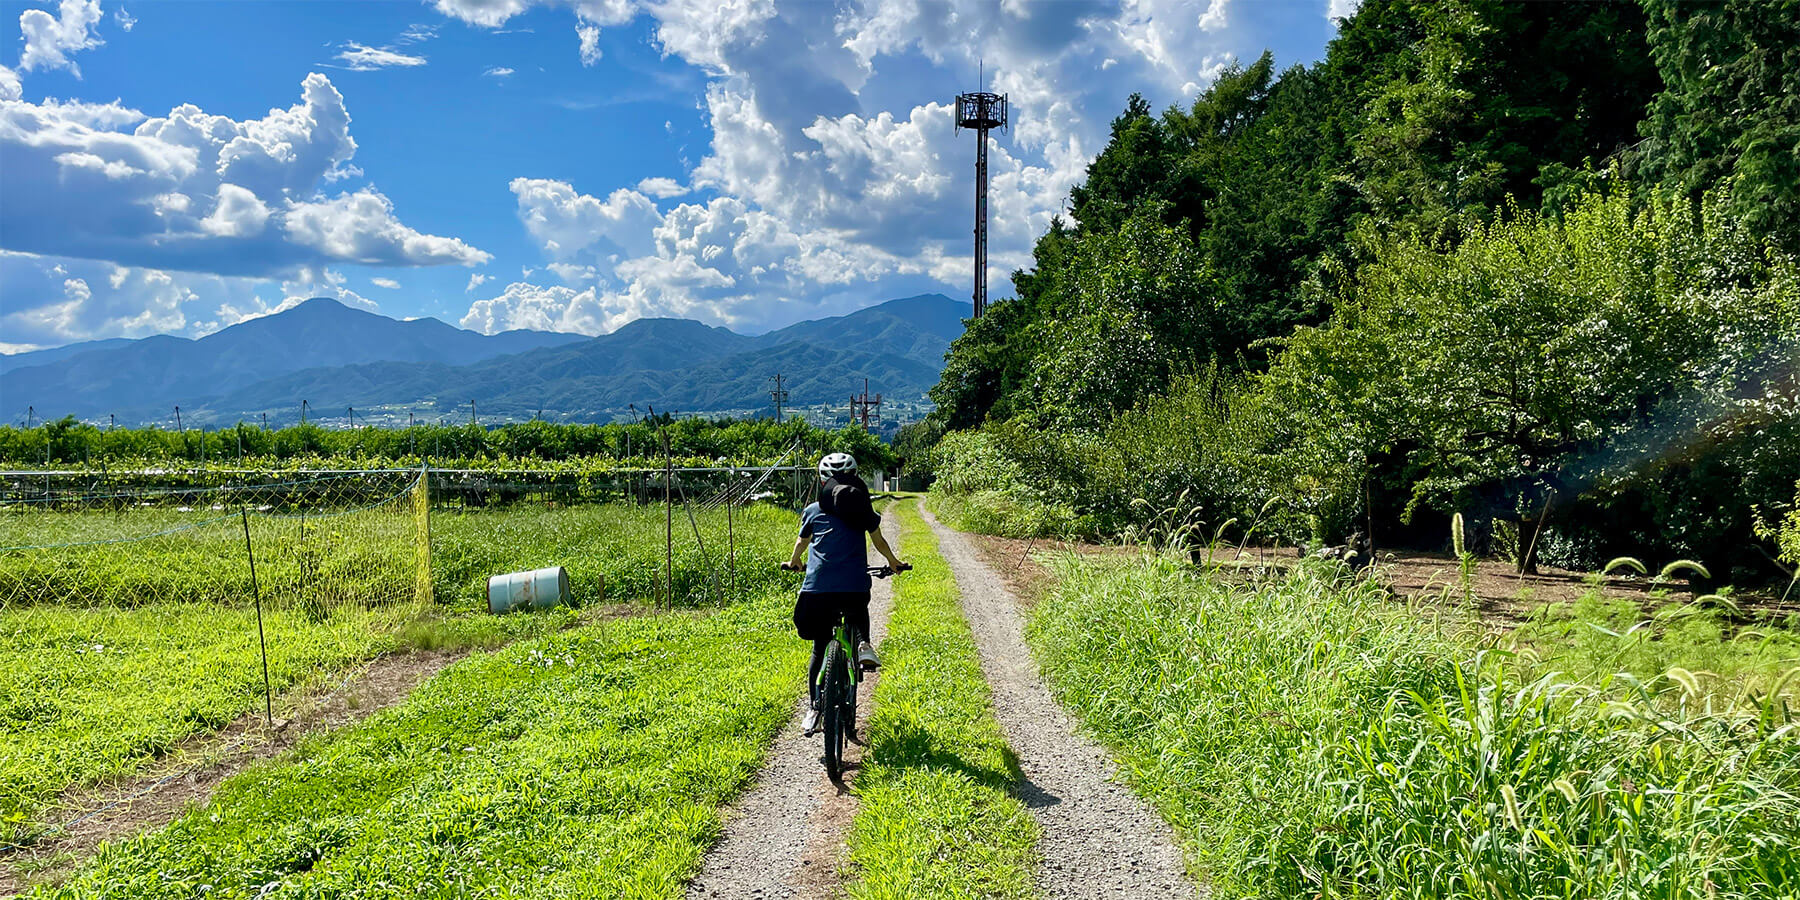 Hợp tác xã nông nghiệp làm du lịch: bài học thú vị đến từ Nhật Bản - 2